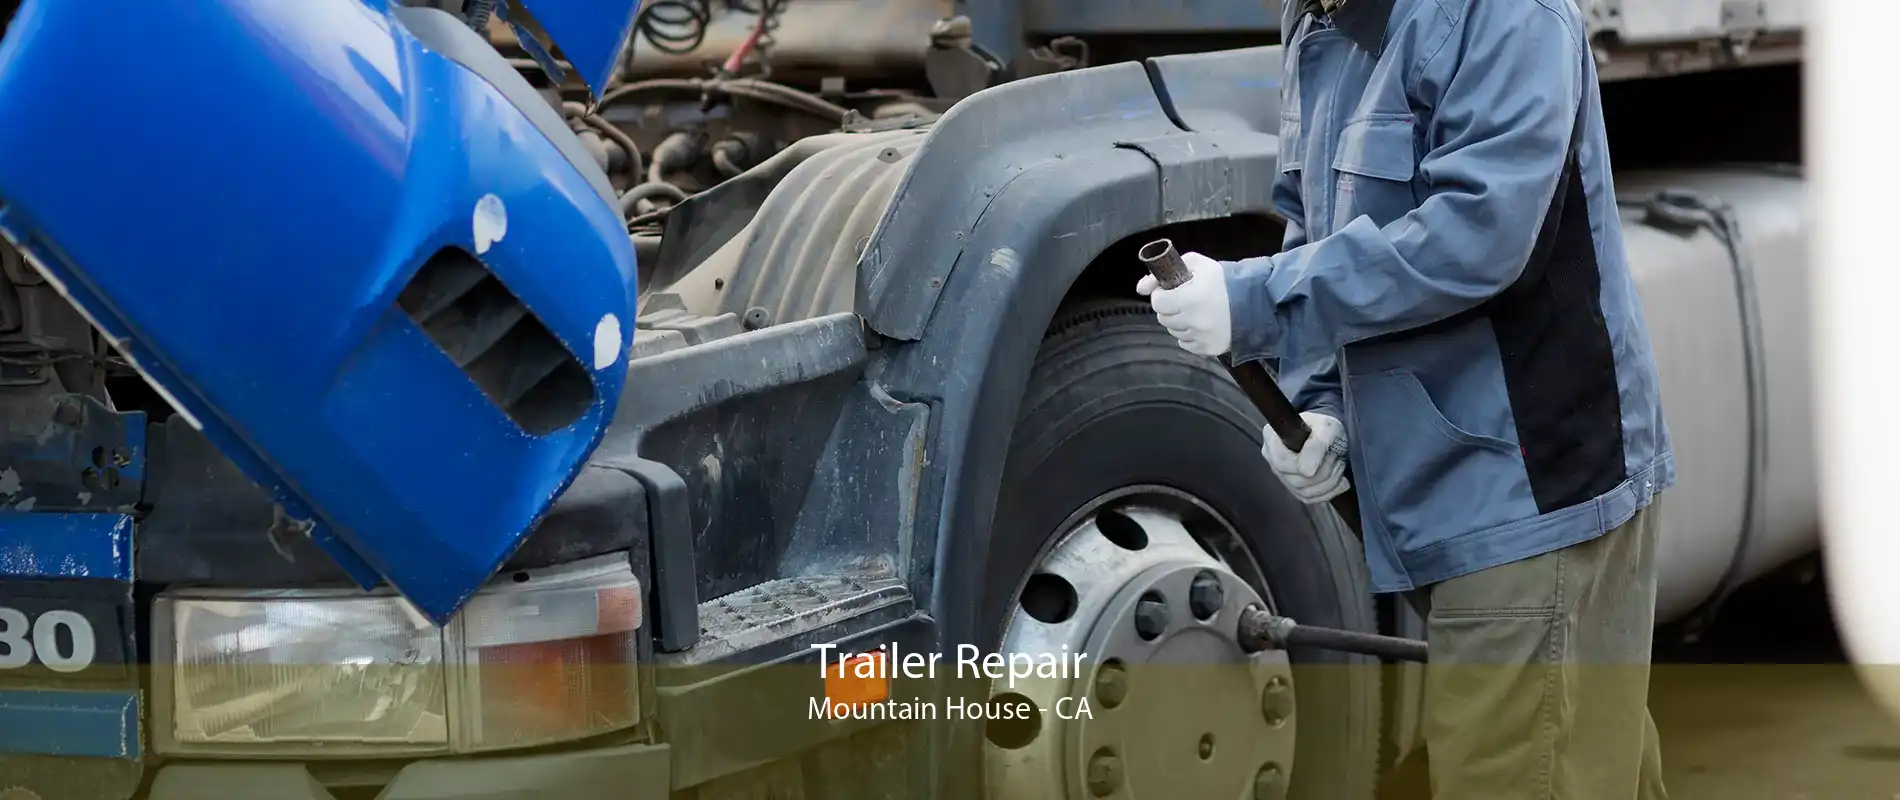 Trailer Repair Mountain House - CA